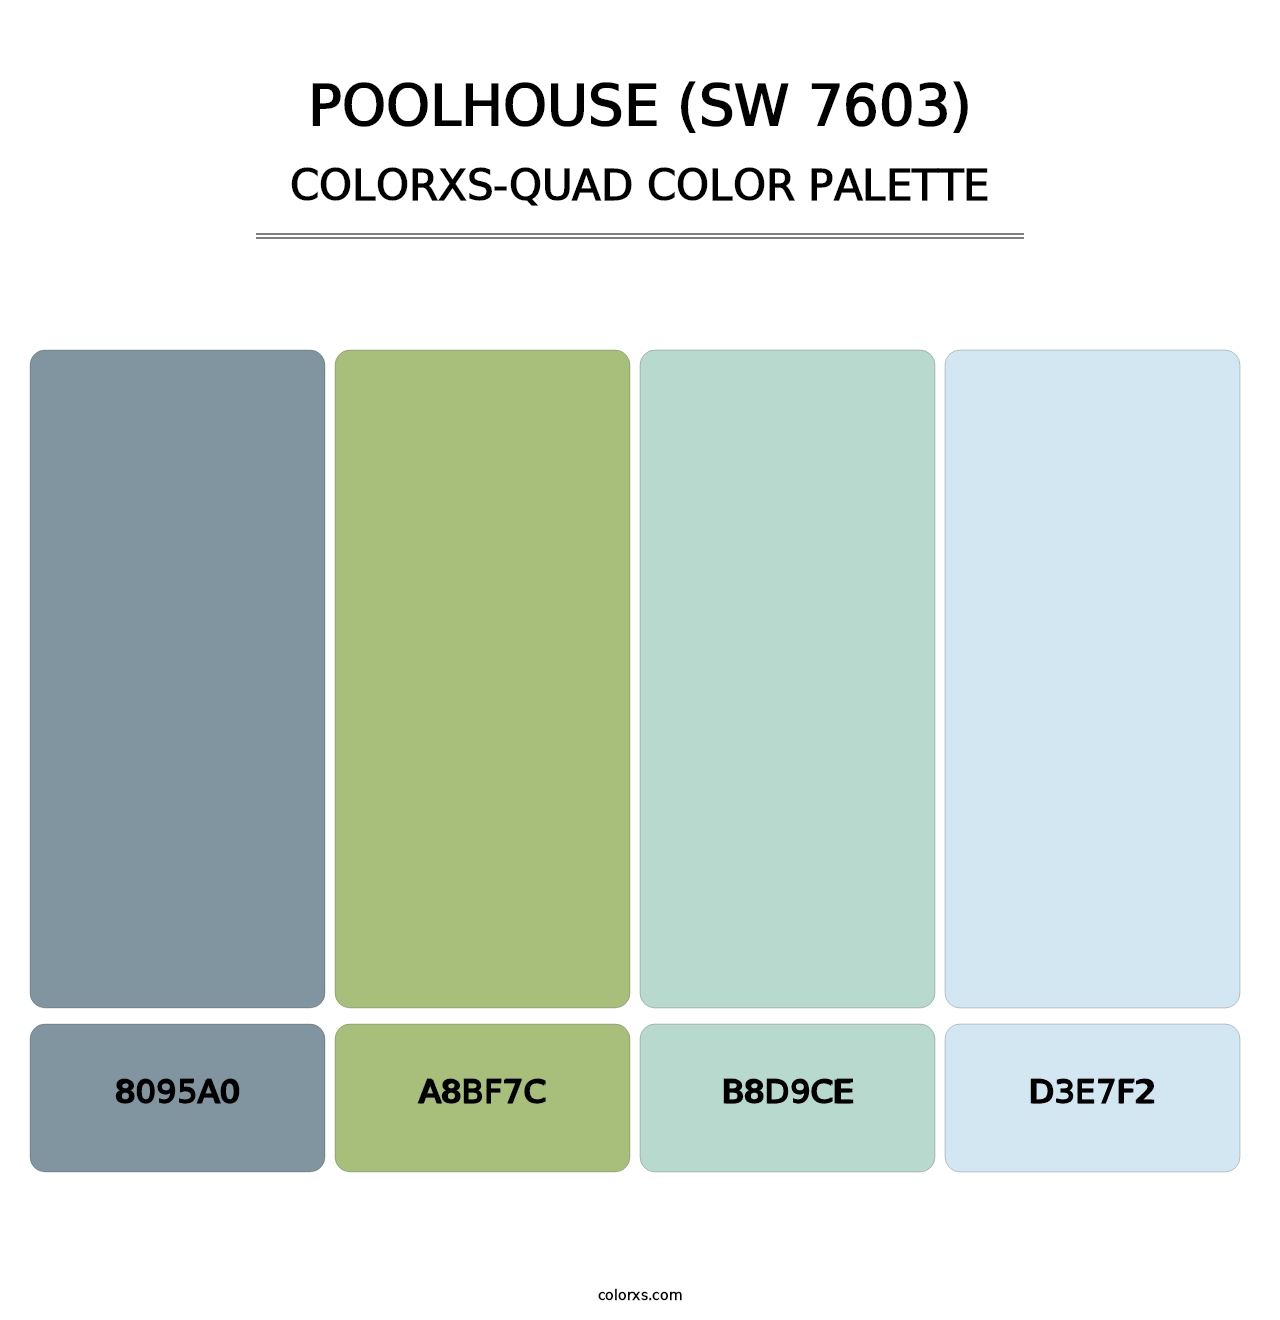 Poolhouse (SW 7603) - Colorxs Quad Palette